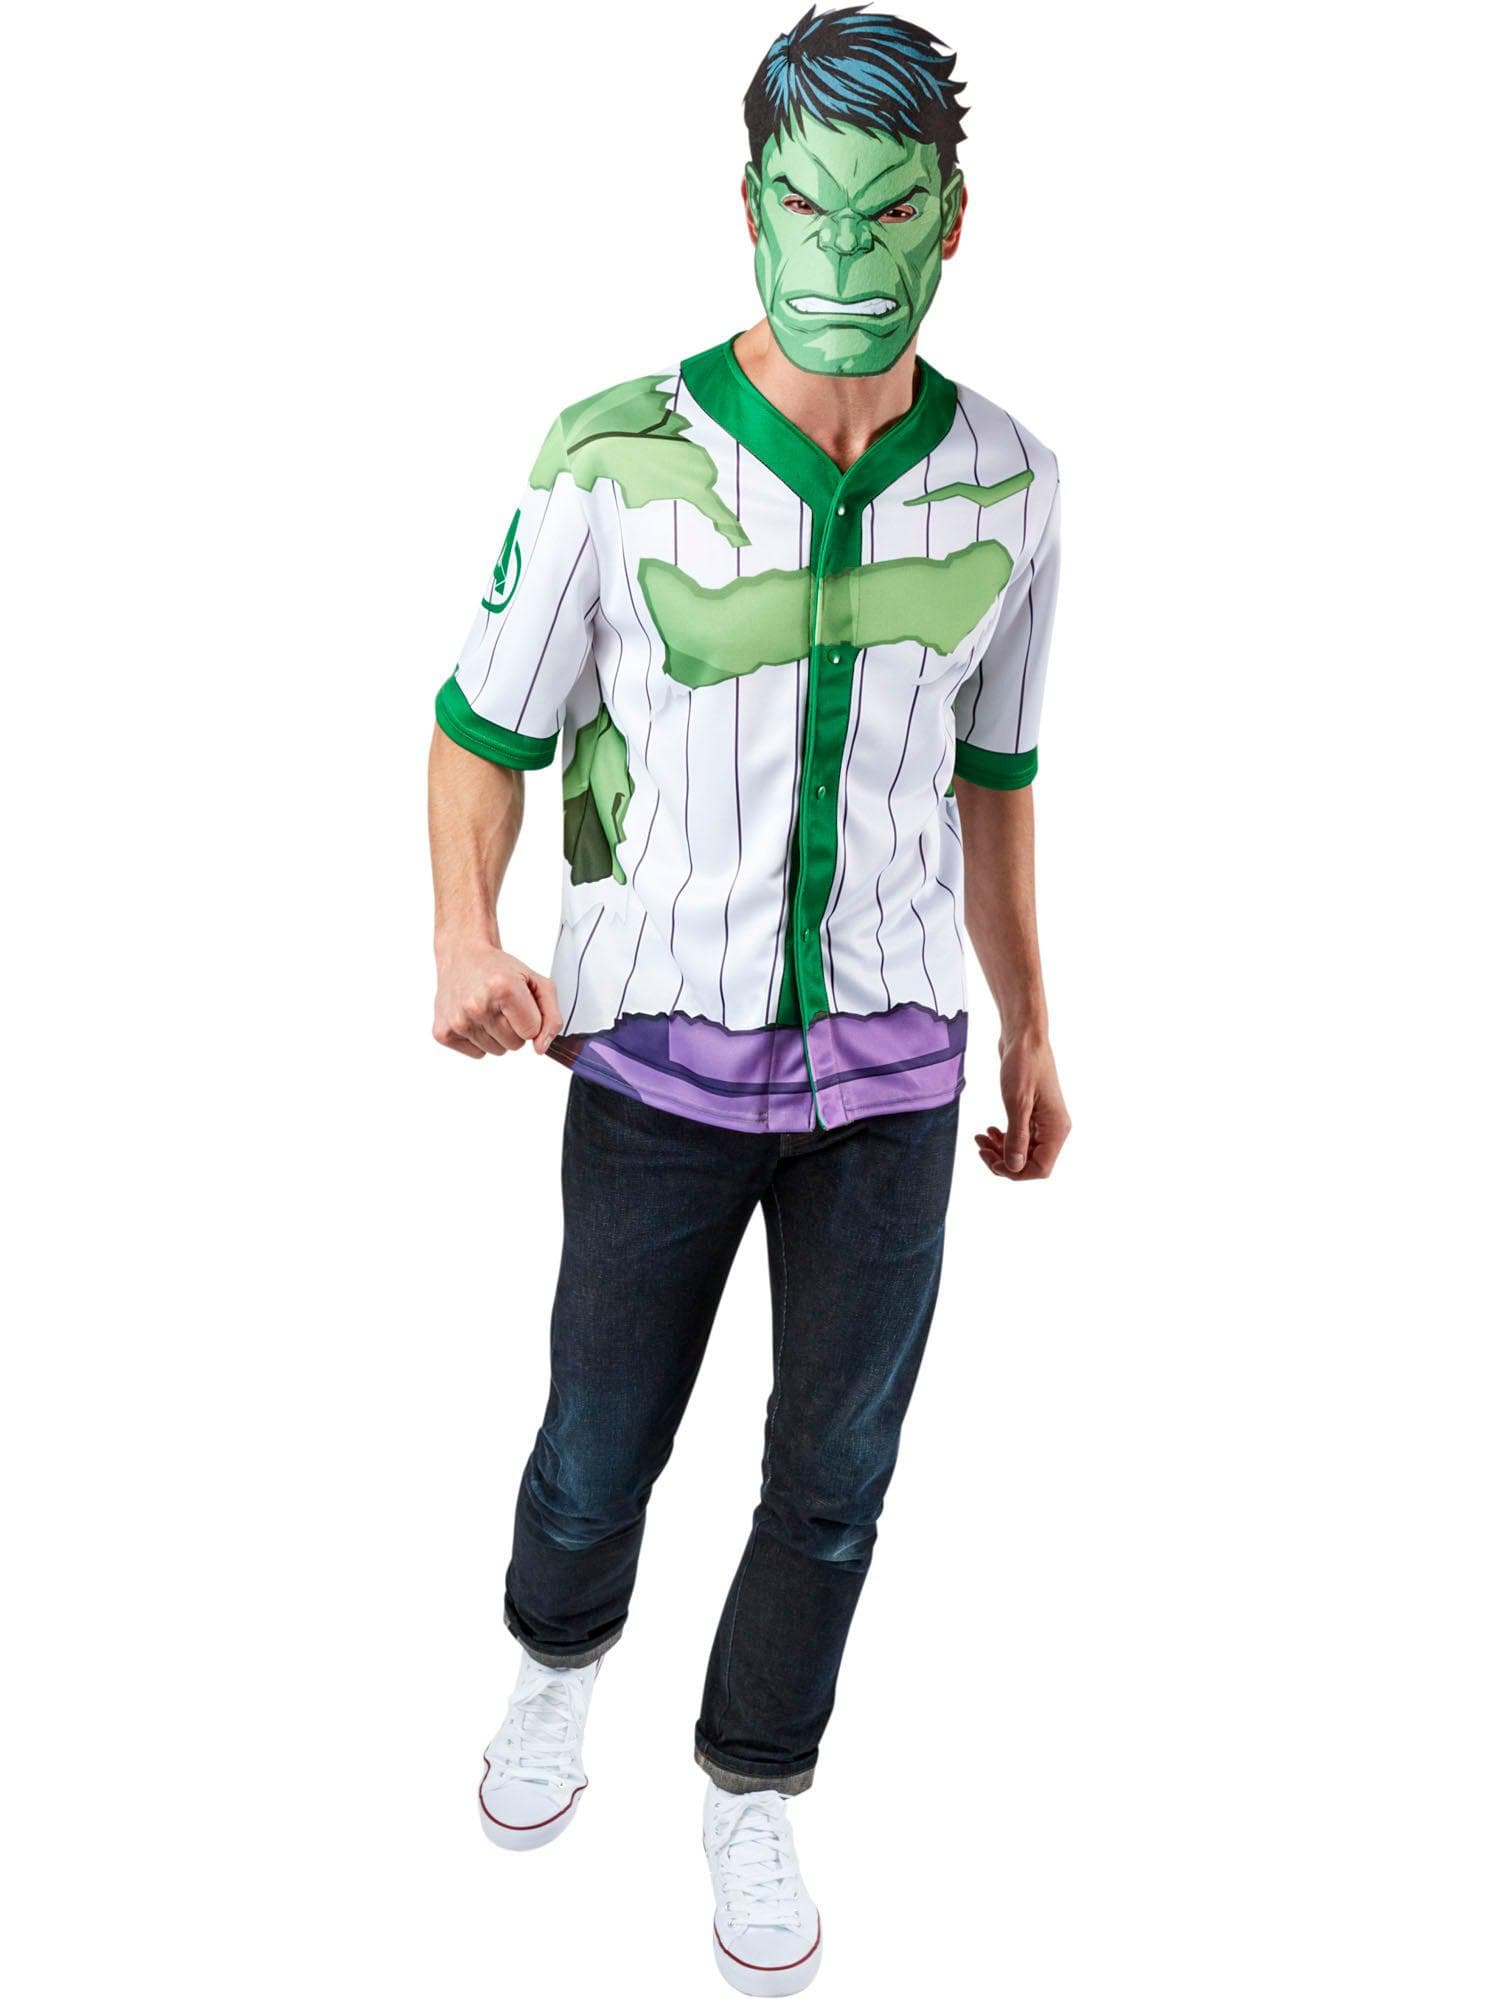 Adult Avengers Hulk Costume - costumes.com